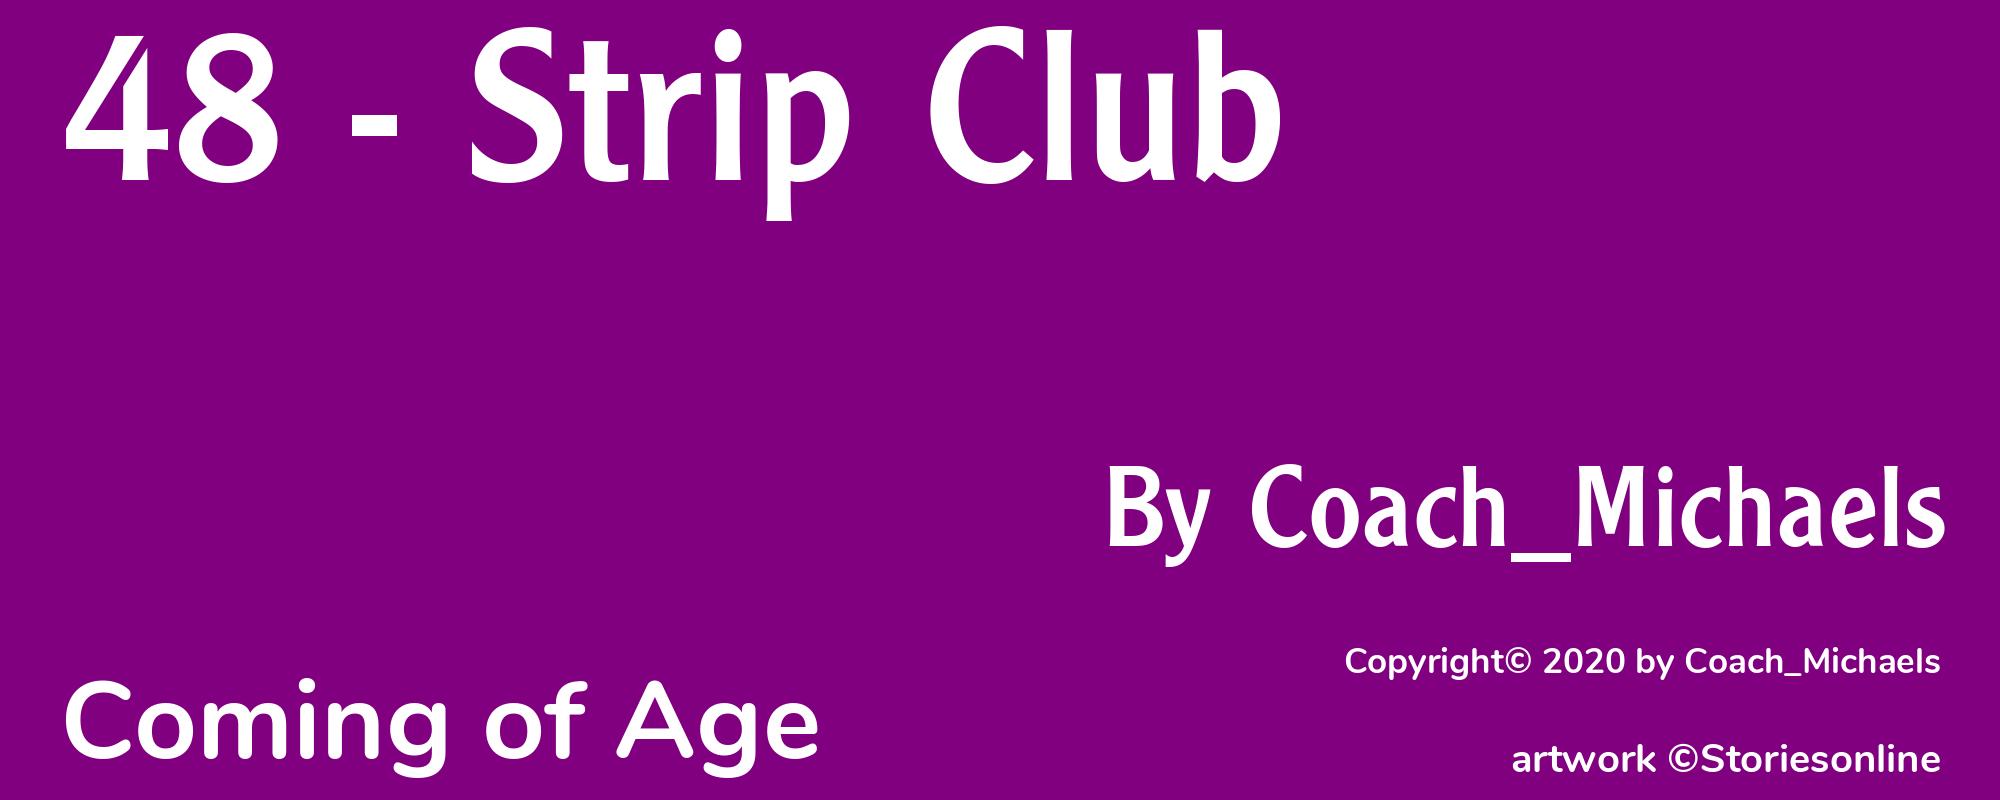 48 - Strip Club - Cover